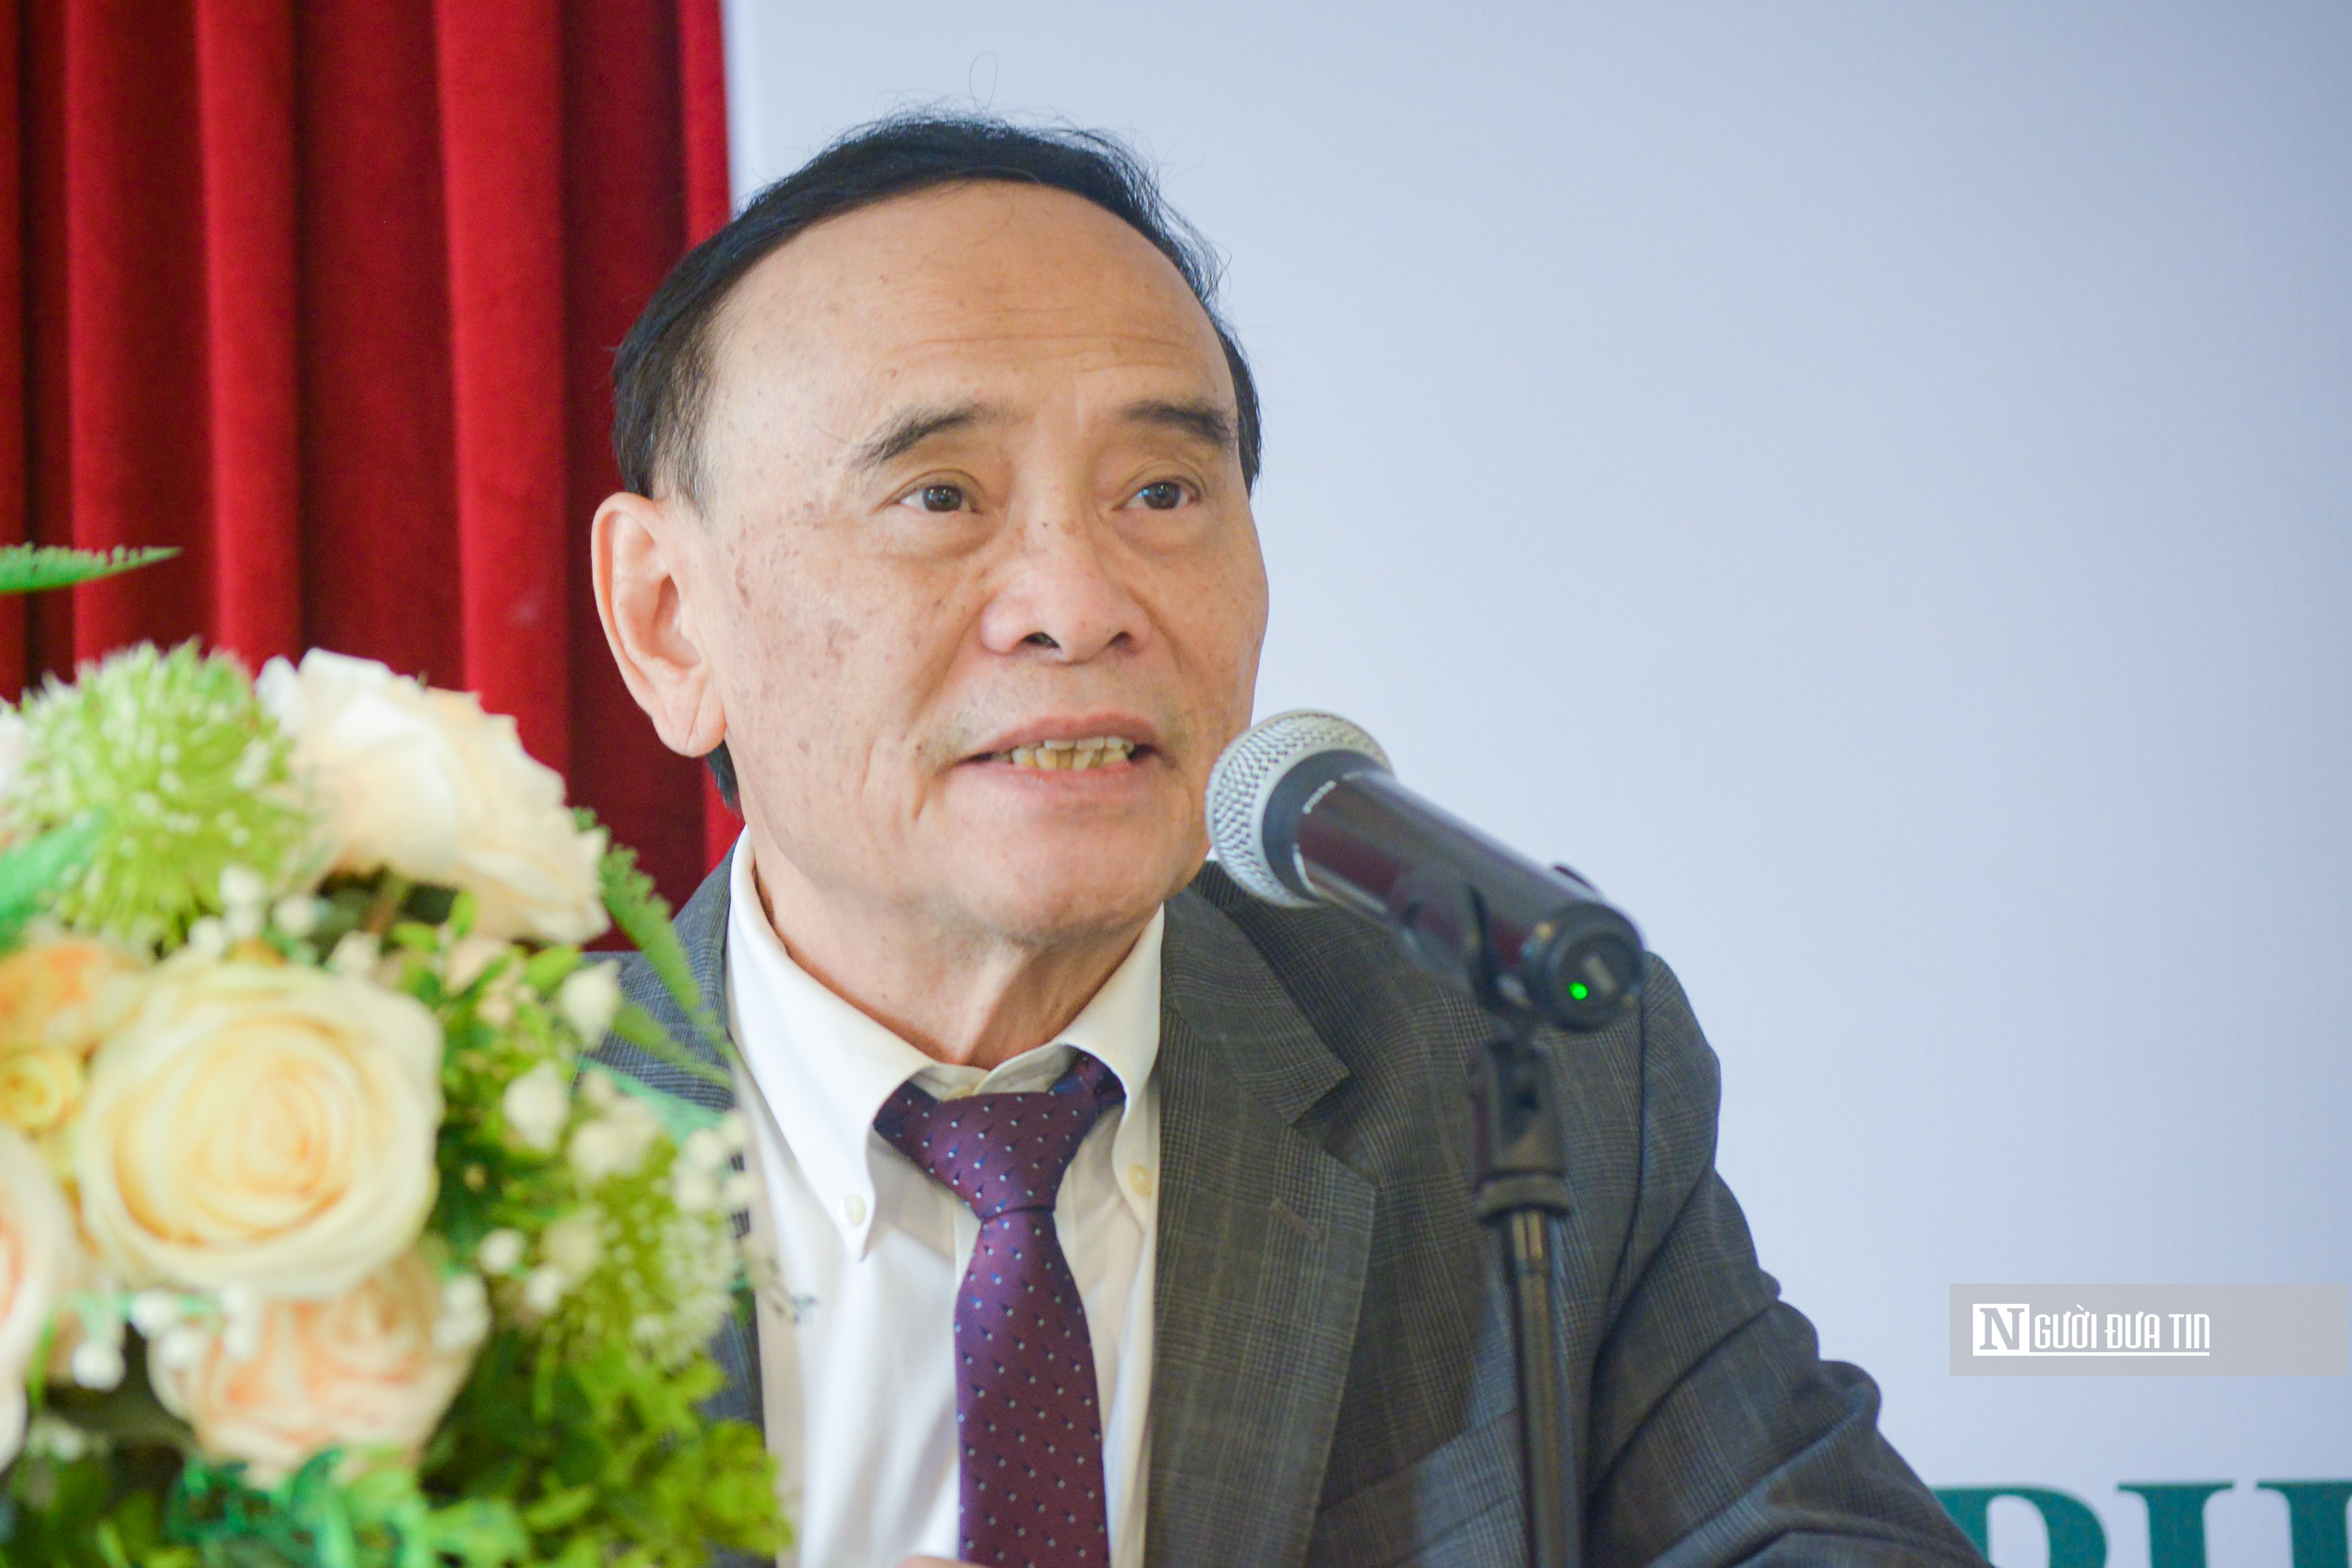 Tiêu điểm - Phát huy vai trò của Hội Luật gia Việt Nam trong hoạt động bảo vệ môi trường